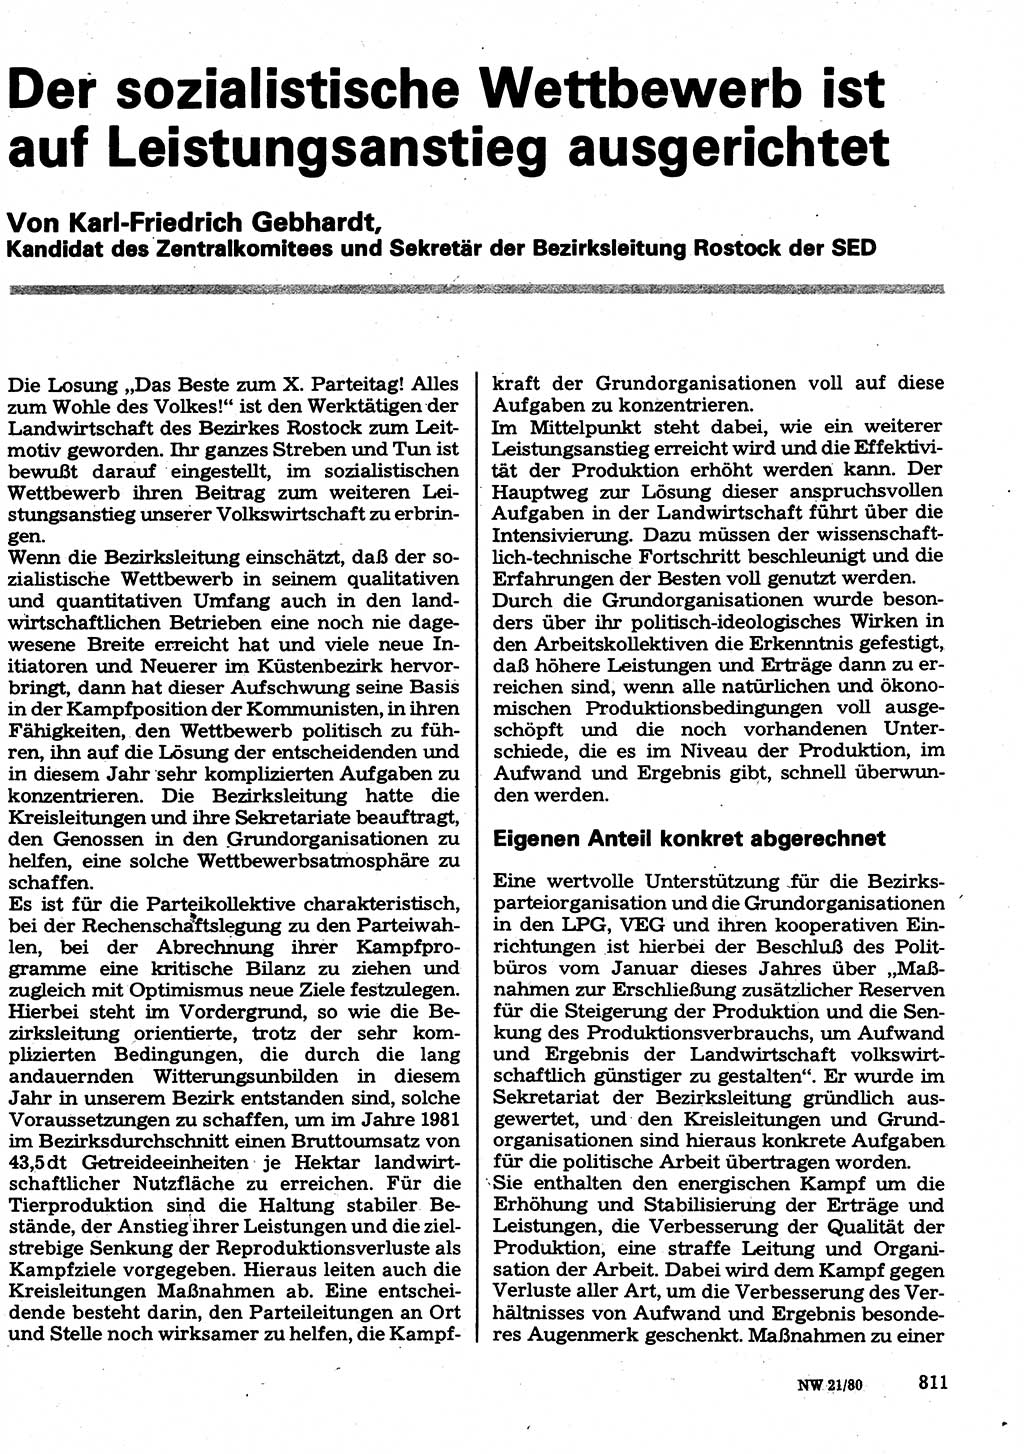 Neuer Weg (NW), Organ des Zentralkomitees (ZK) der SED (Sozialistische Einheitspartei Deutschlands) für Fragen des Parteilebens, 35. Jahrgang [Deutsche Demokratische Republik (DDR)] 1980, Seite 811 (NW ZK SED DDR 1980, S. 811)